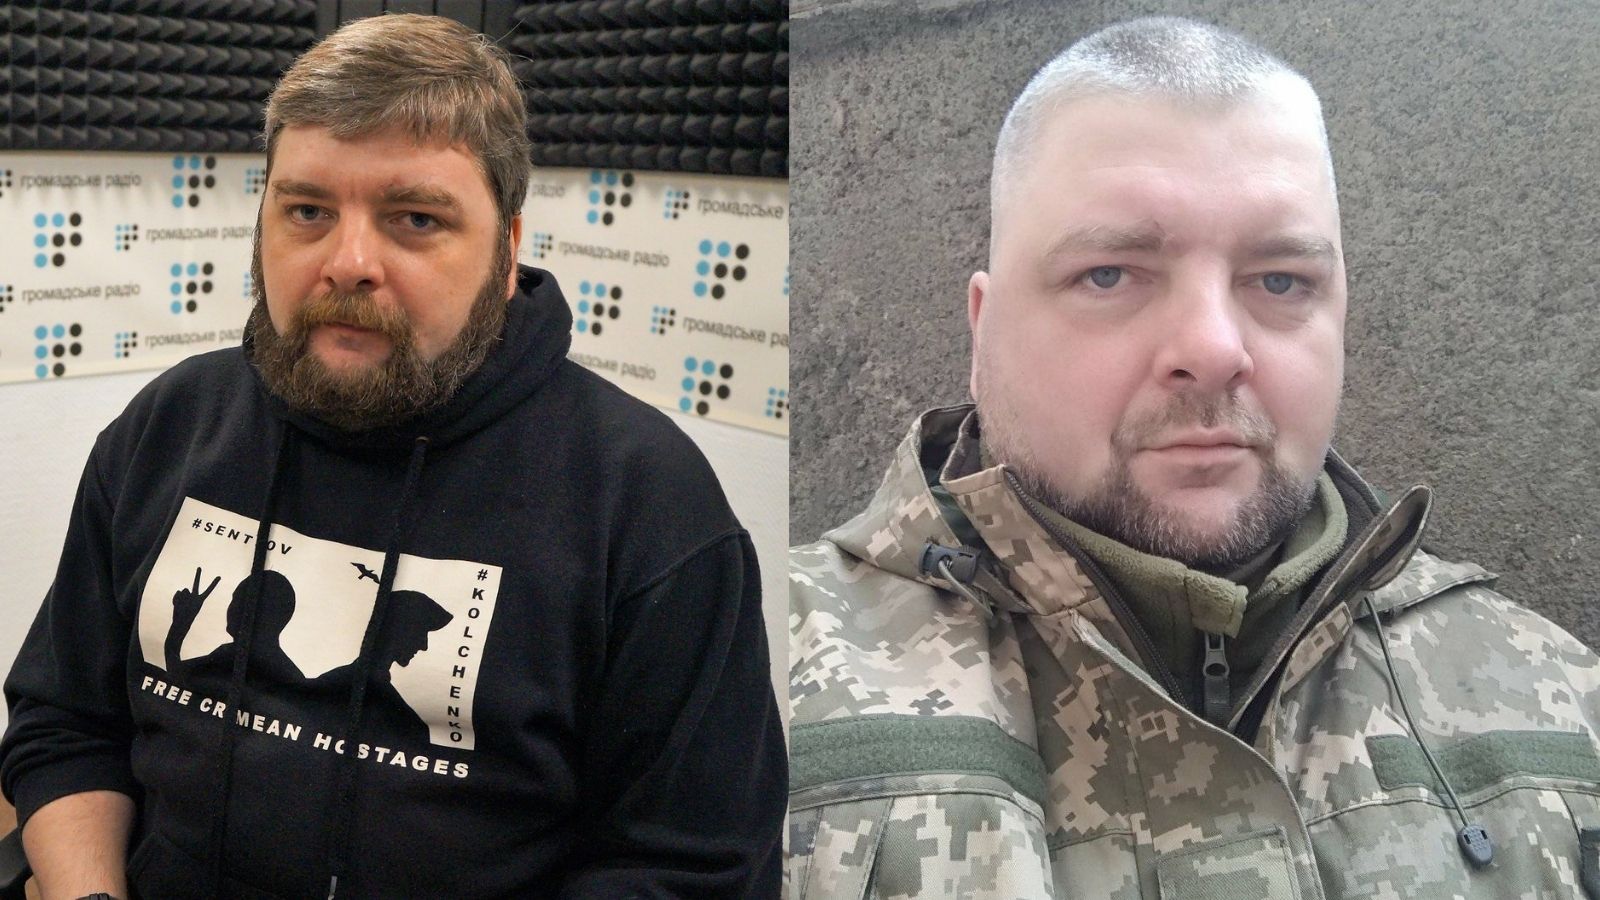 Оновлено: Громадське радіо зібрало кошти на тепловізор для підрозділу, у якому служить правозахисник Максим Буткевич